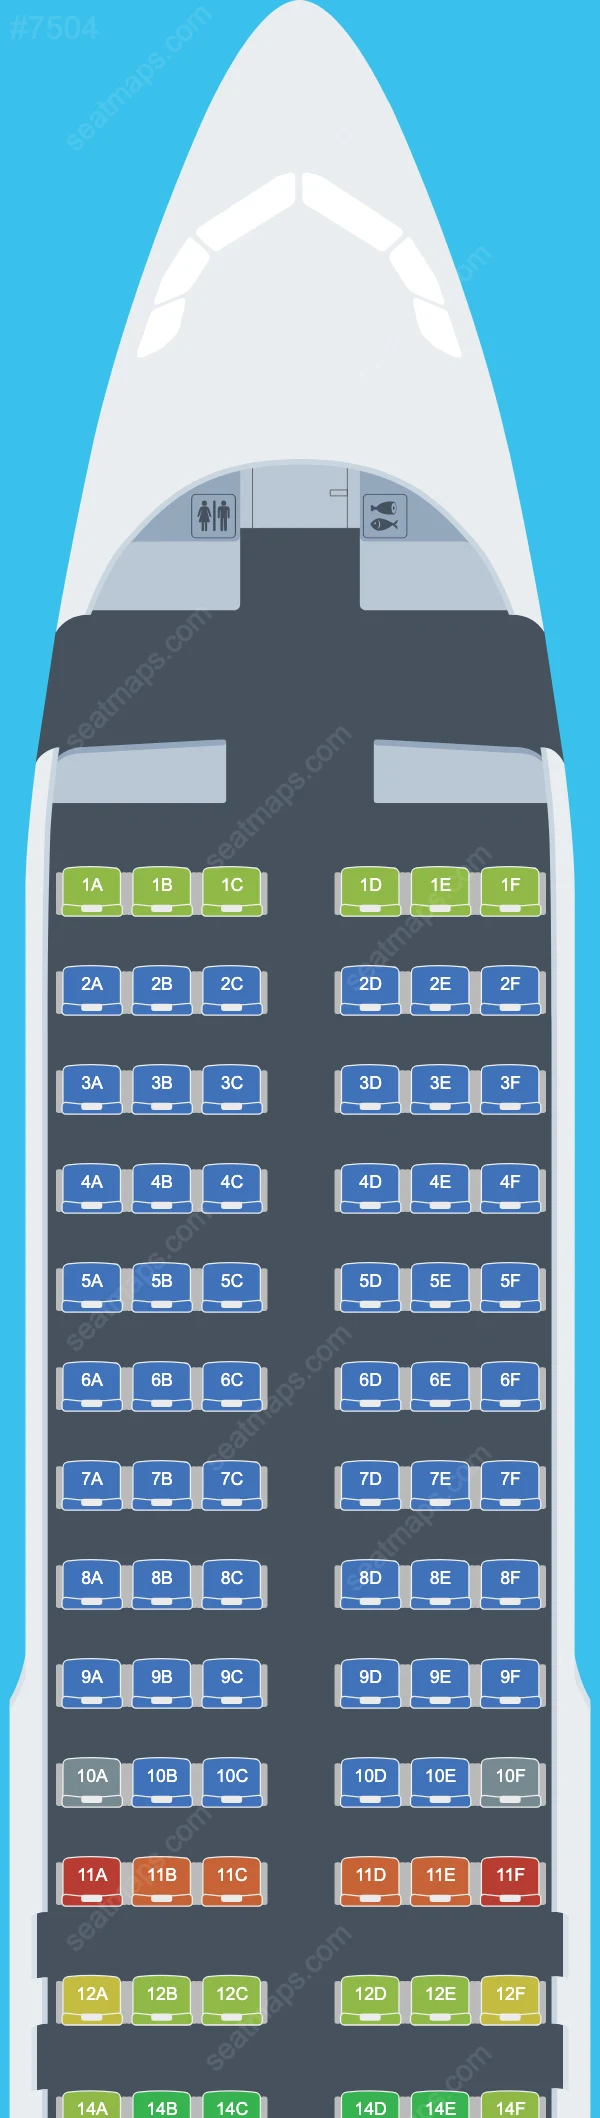 Trade Air Airbus A320 Seat Maps A320-200